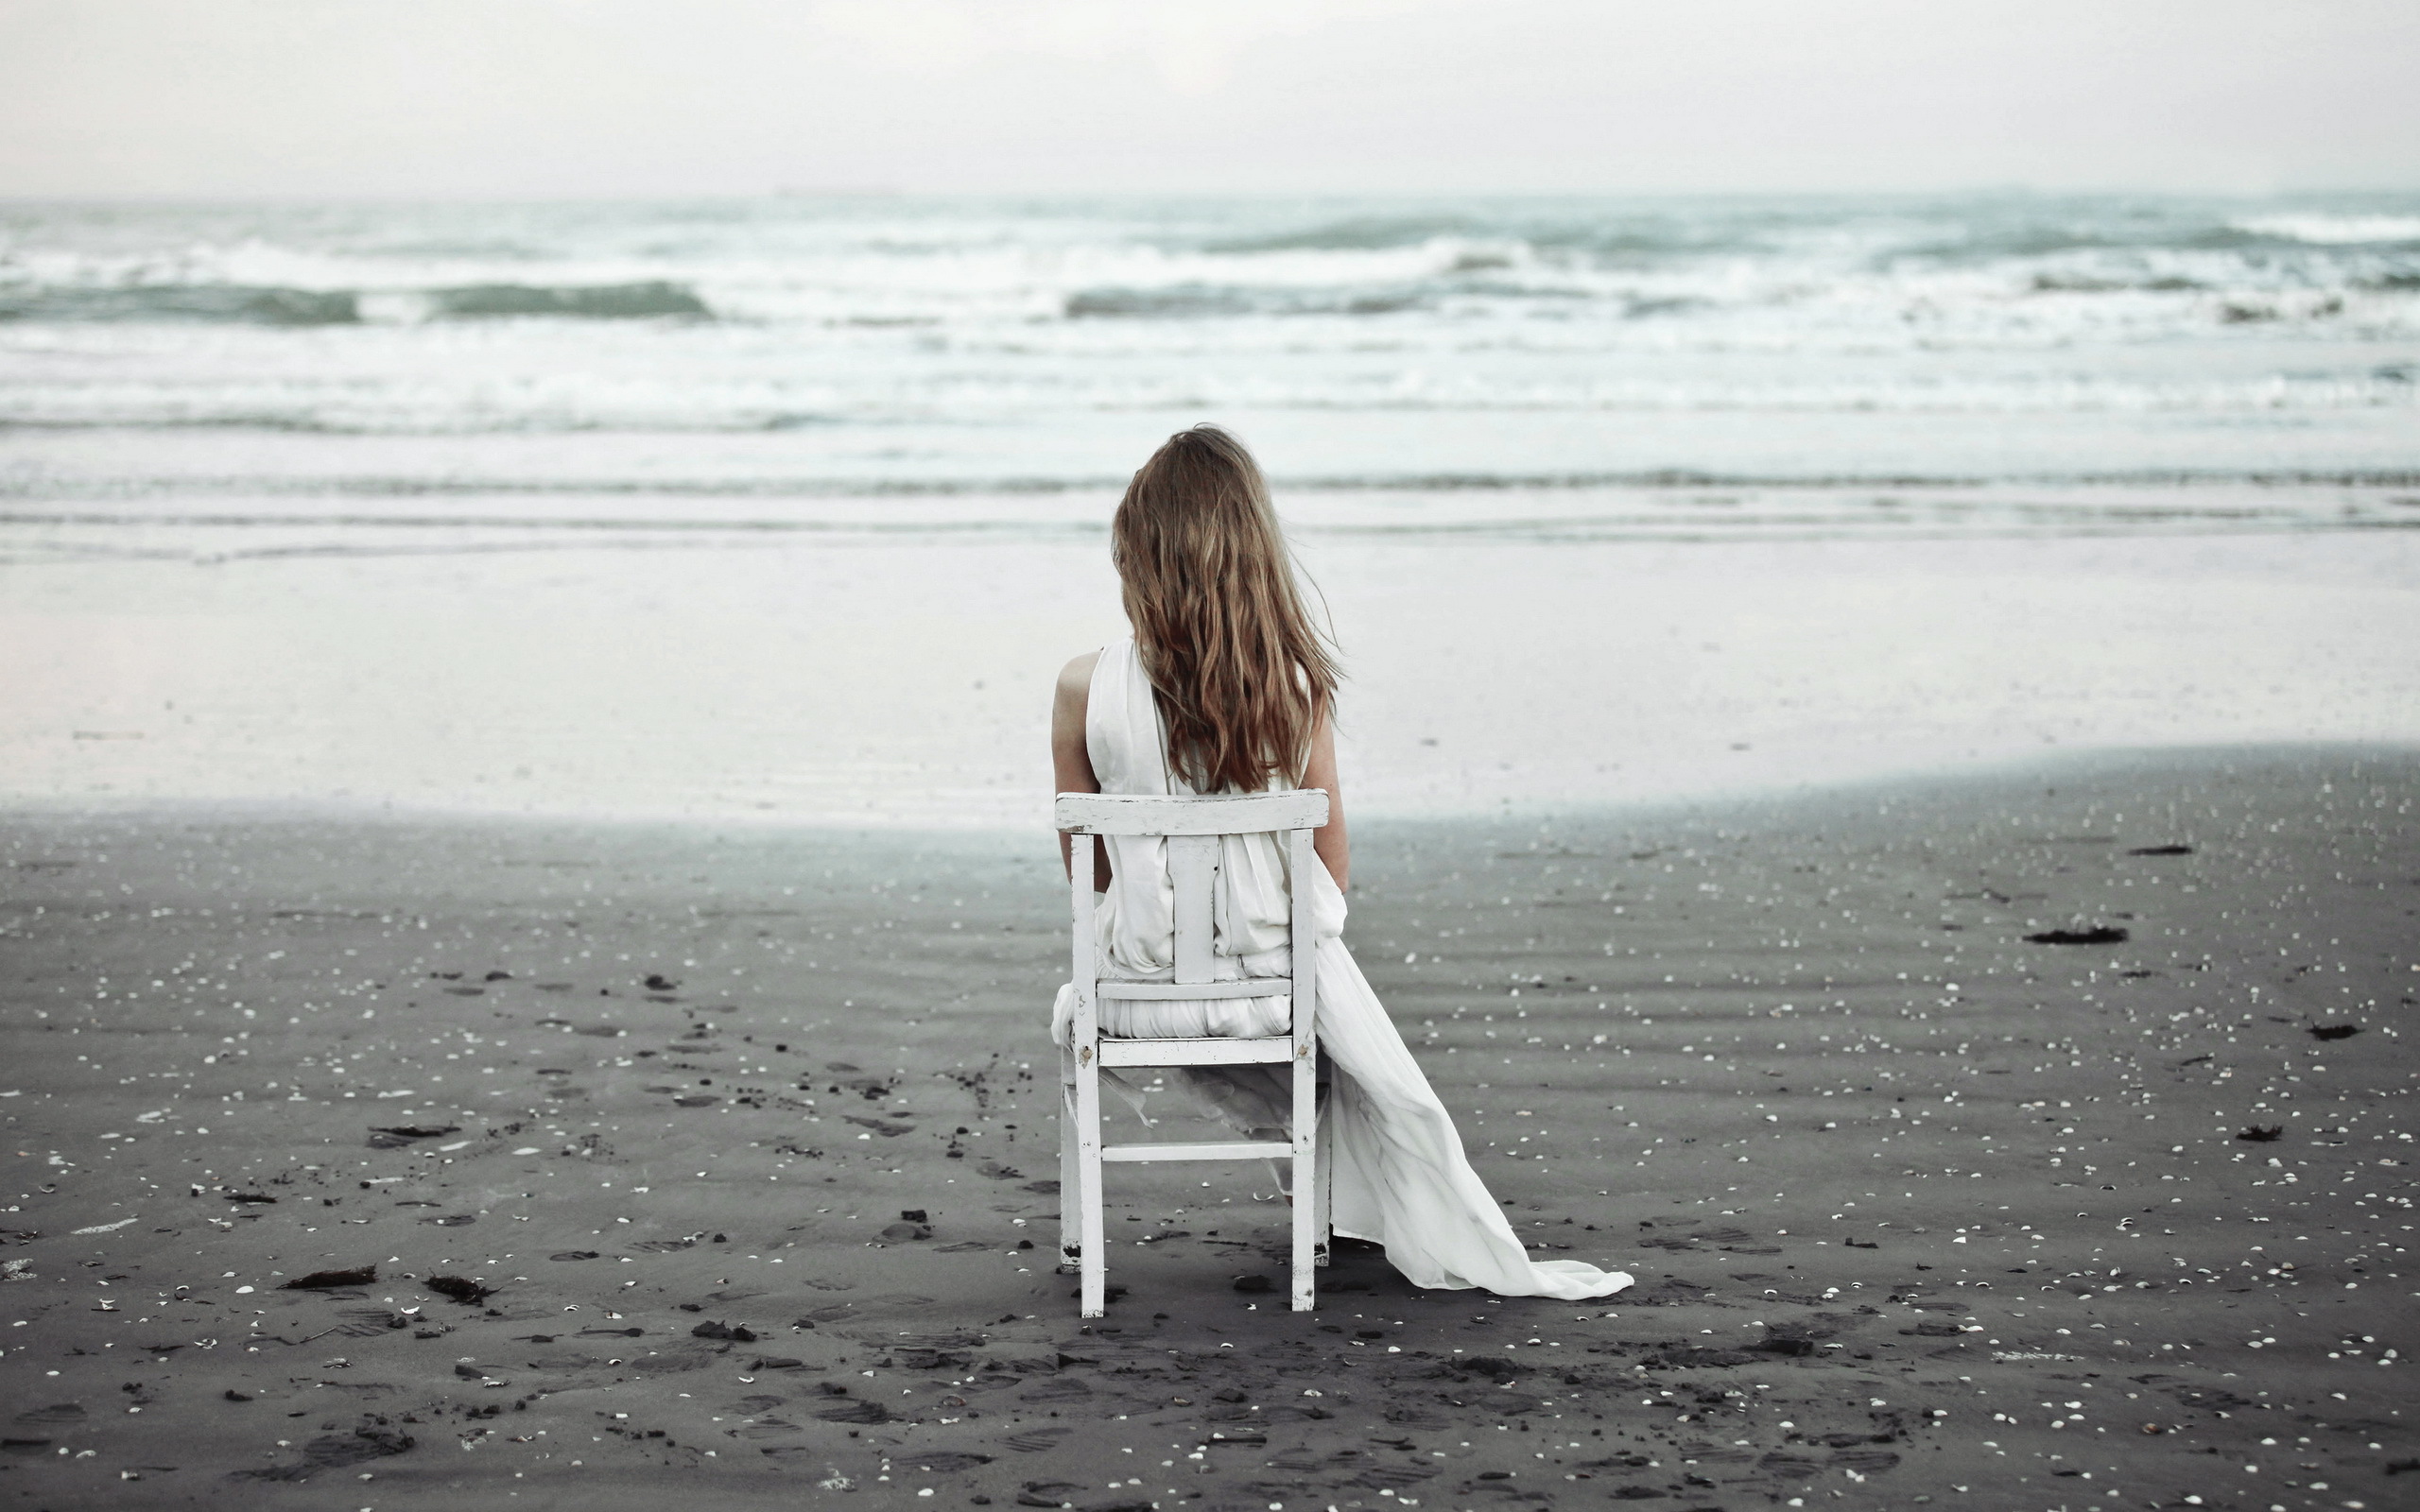 Одиночество. Море одиночество. Одинокая девушка. Девушка сидит у моря. Это одиночество.